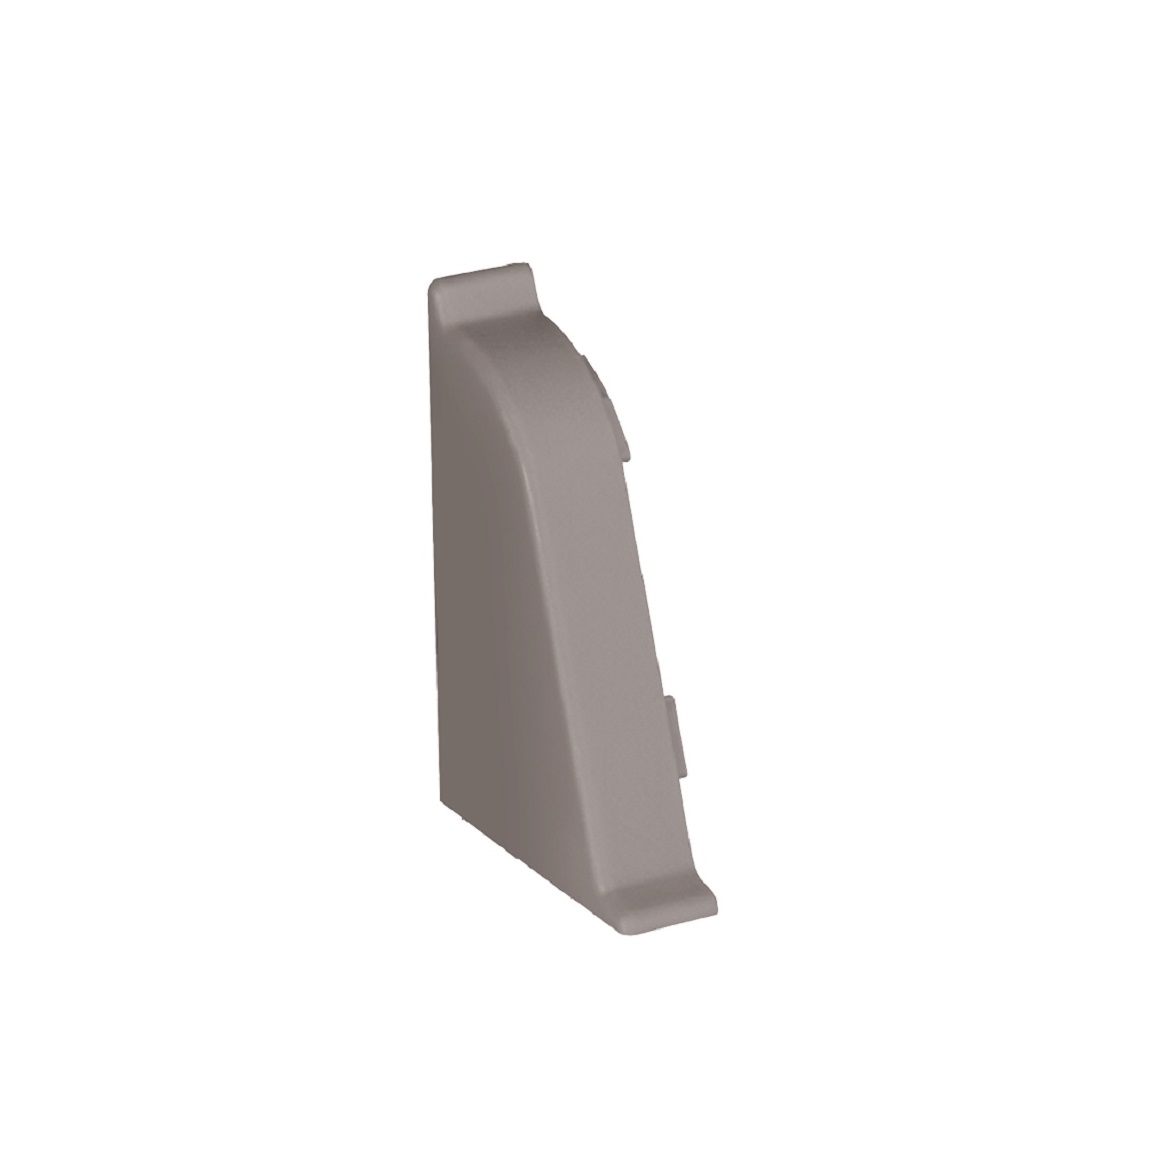 Linkes Endstück für Arbeitsplattenleiste BL44 granit grau 114,2